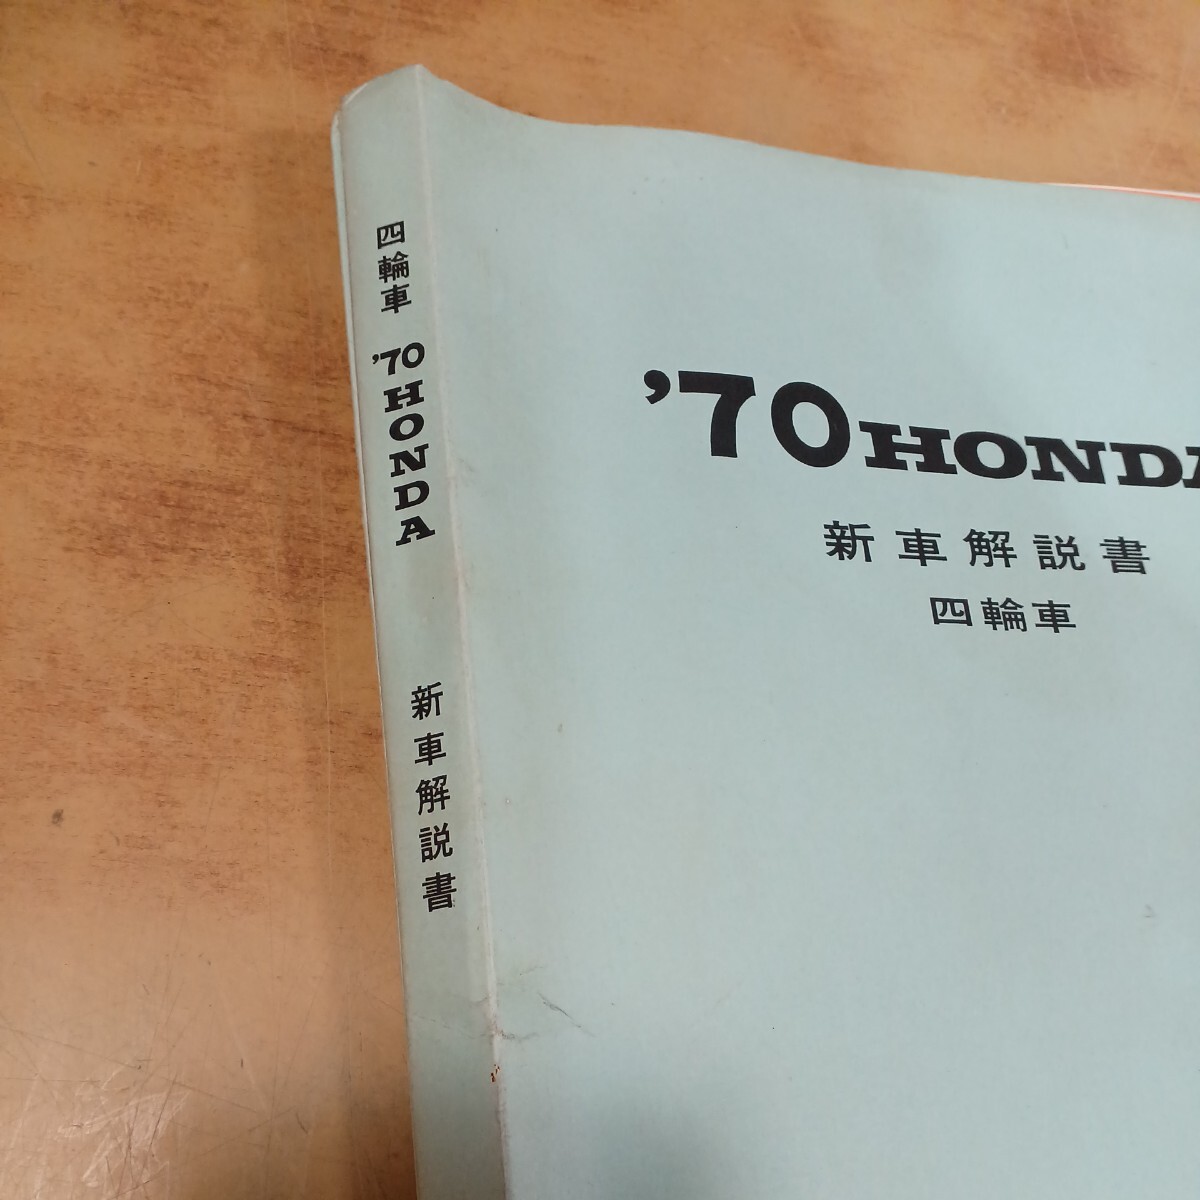 HONDA NⅢ360 LNⅢ360 TNⅢ360 Honda \'70HONDA новая машина инструкция 4 колесо машина распродажа Showa Retro редкий подлинная вещь б/у долгосрочное хранение 